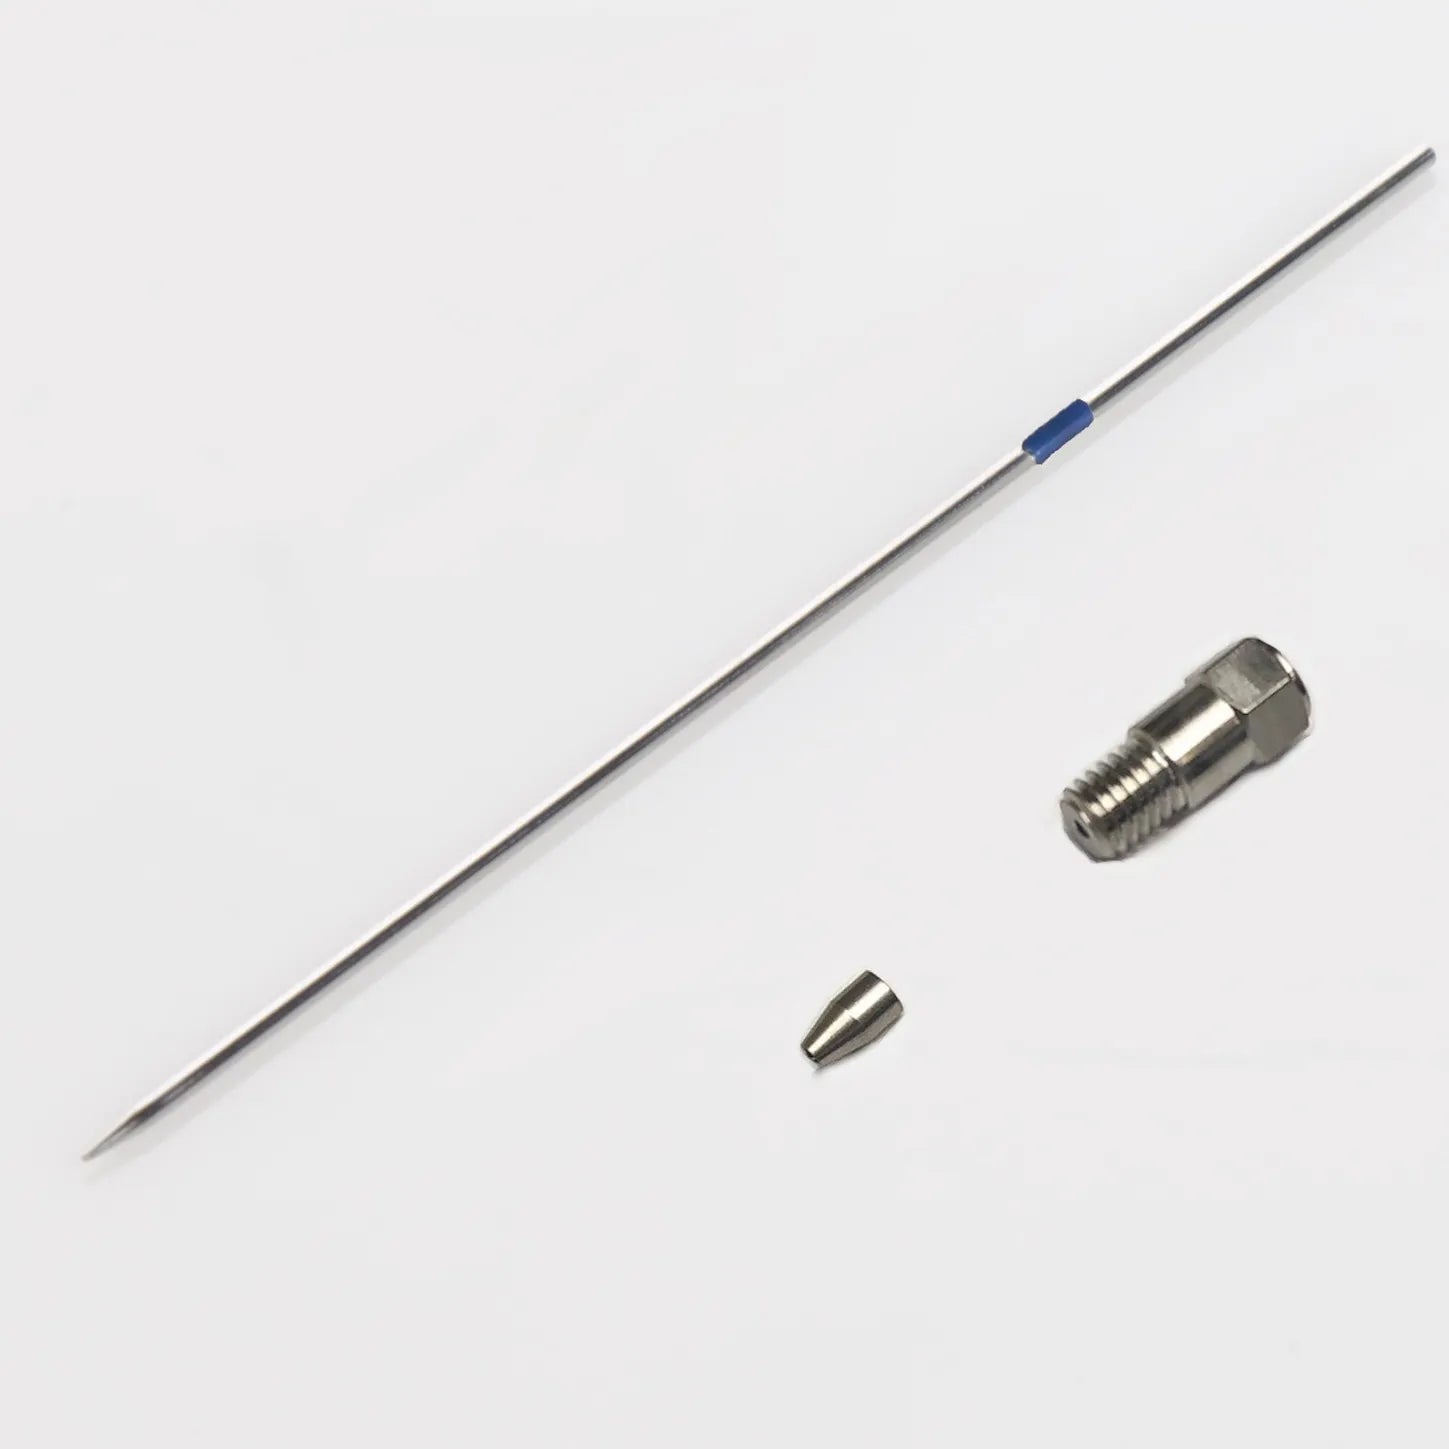 Uncoated Needle Kit, Comparable to Shimadzu # 228-41024-96